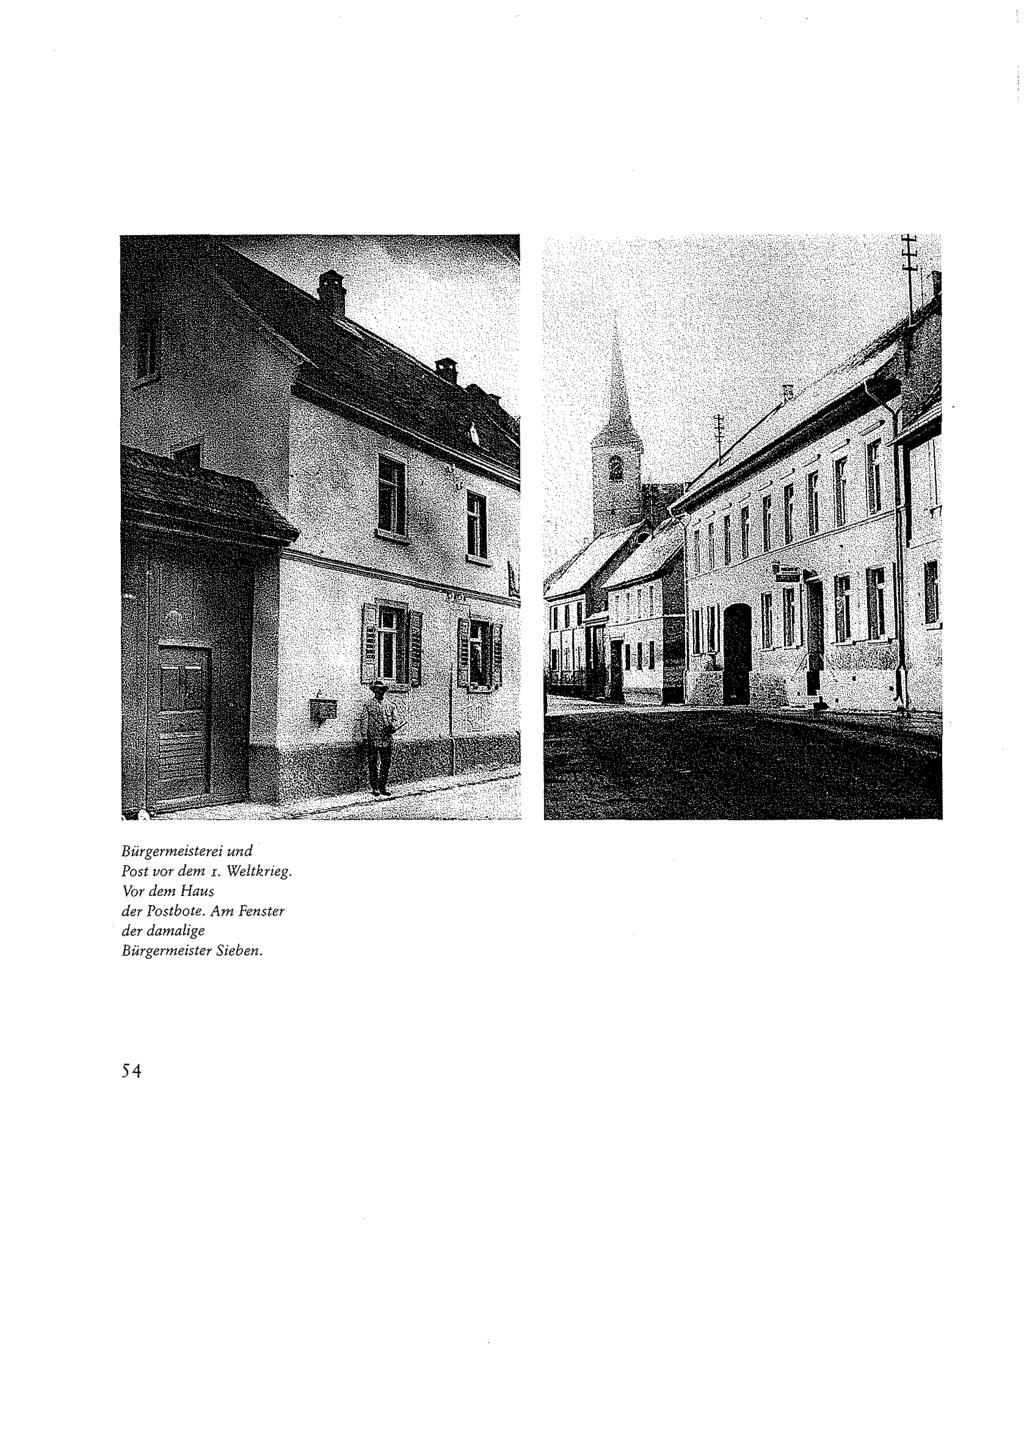 Bürgermeisterei und Post vor dem 1. Weltkrieg.